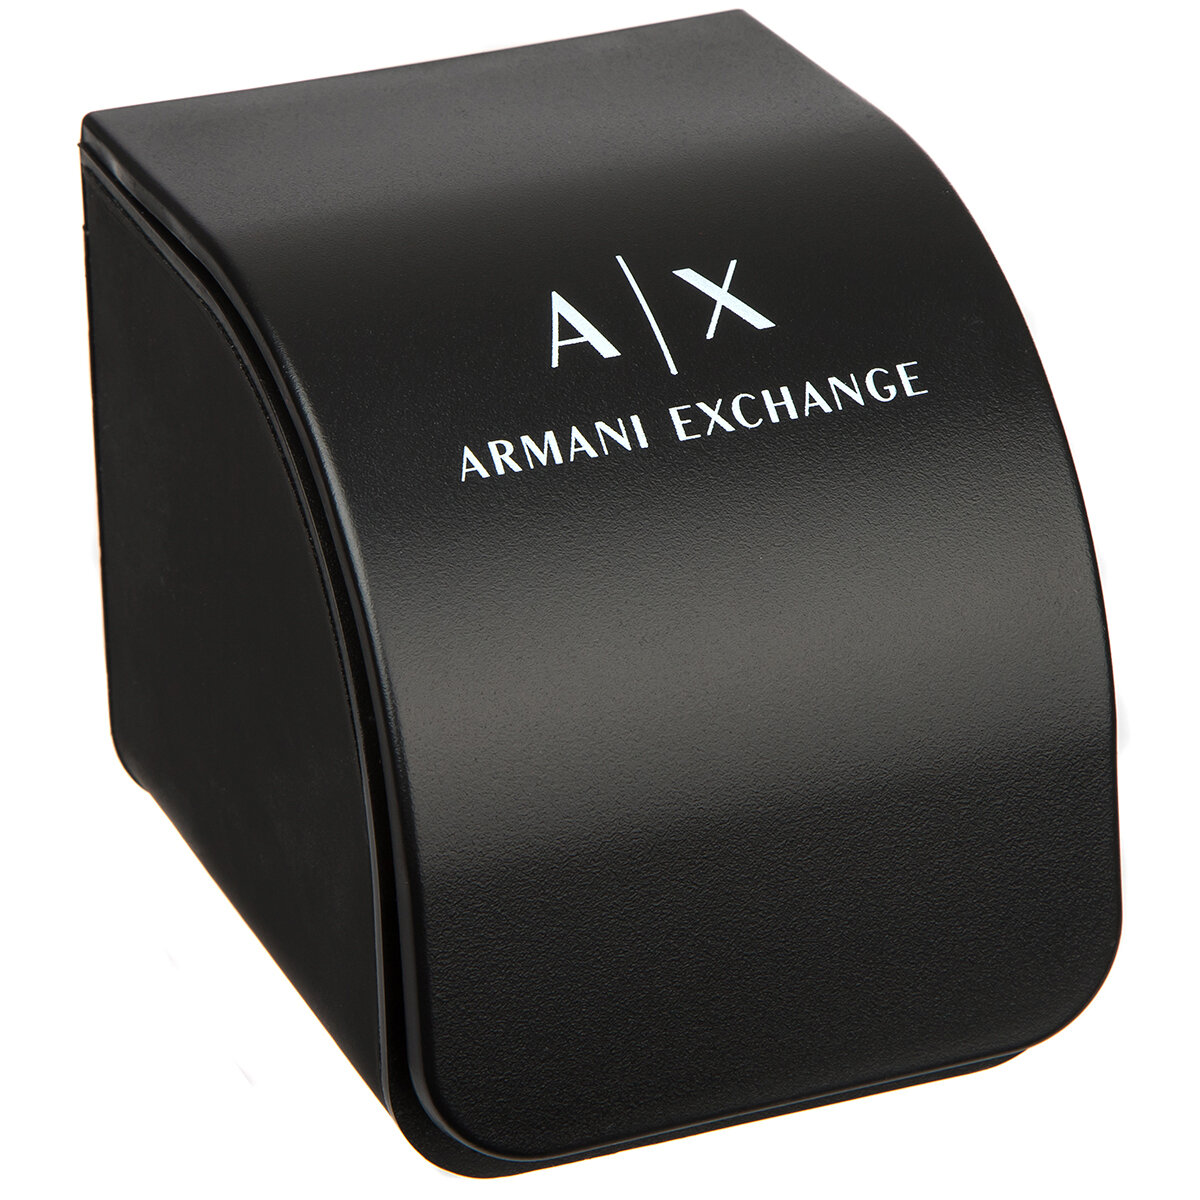 ARMANI EXCHANGE AX2706